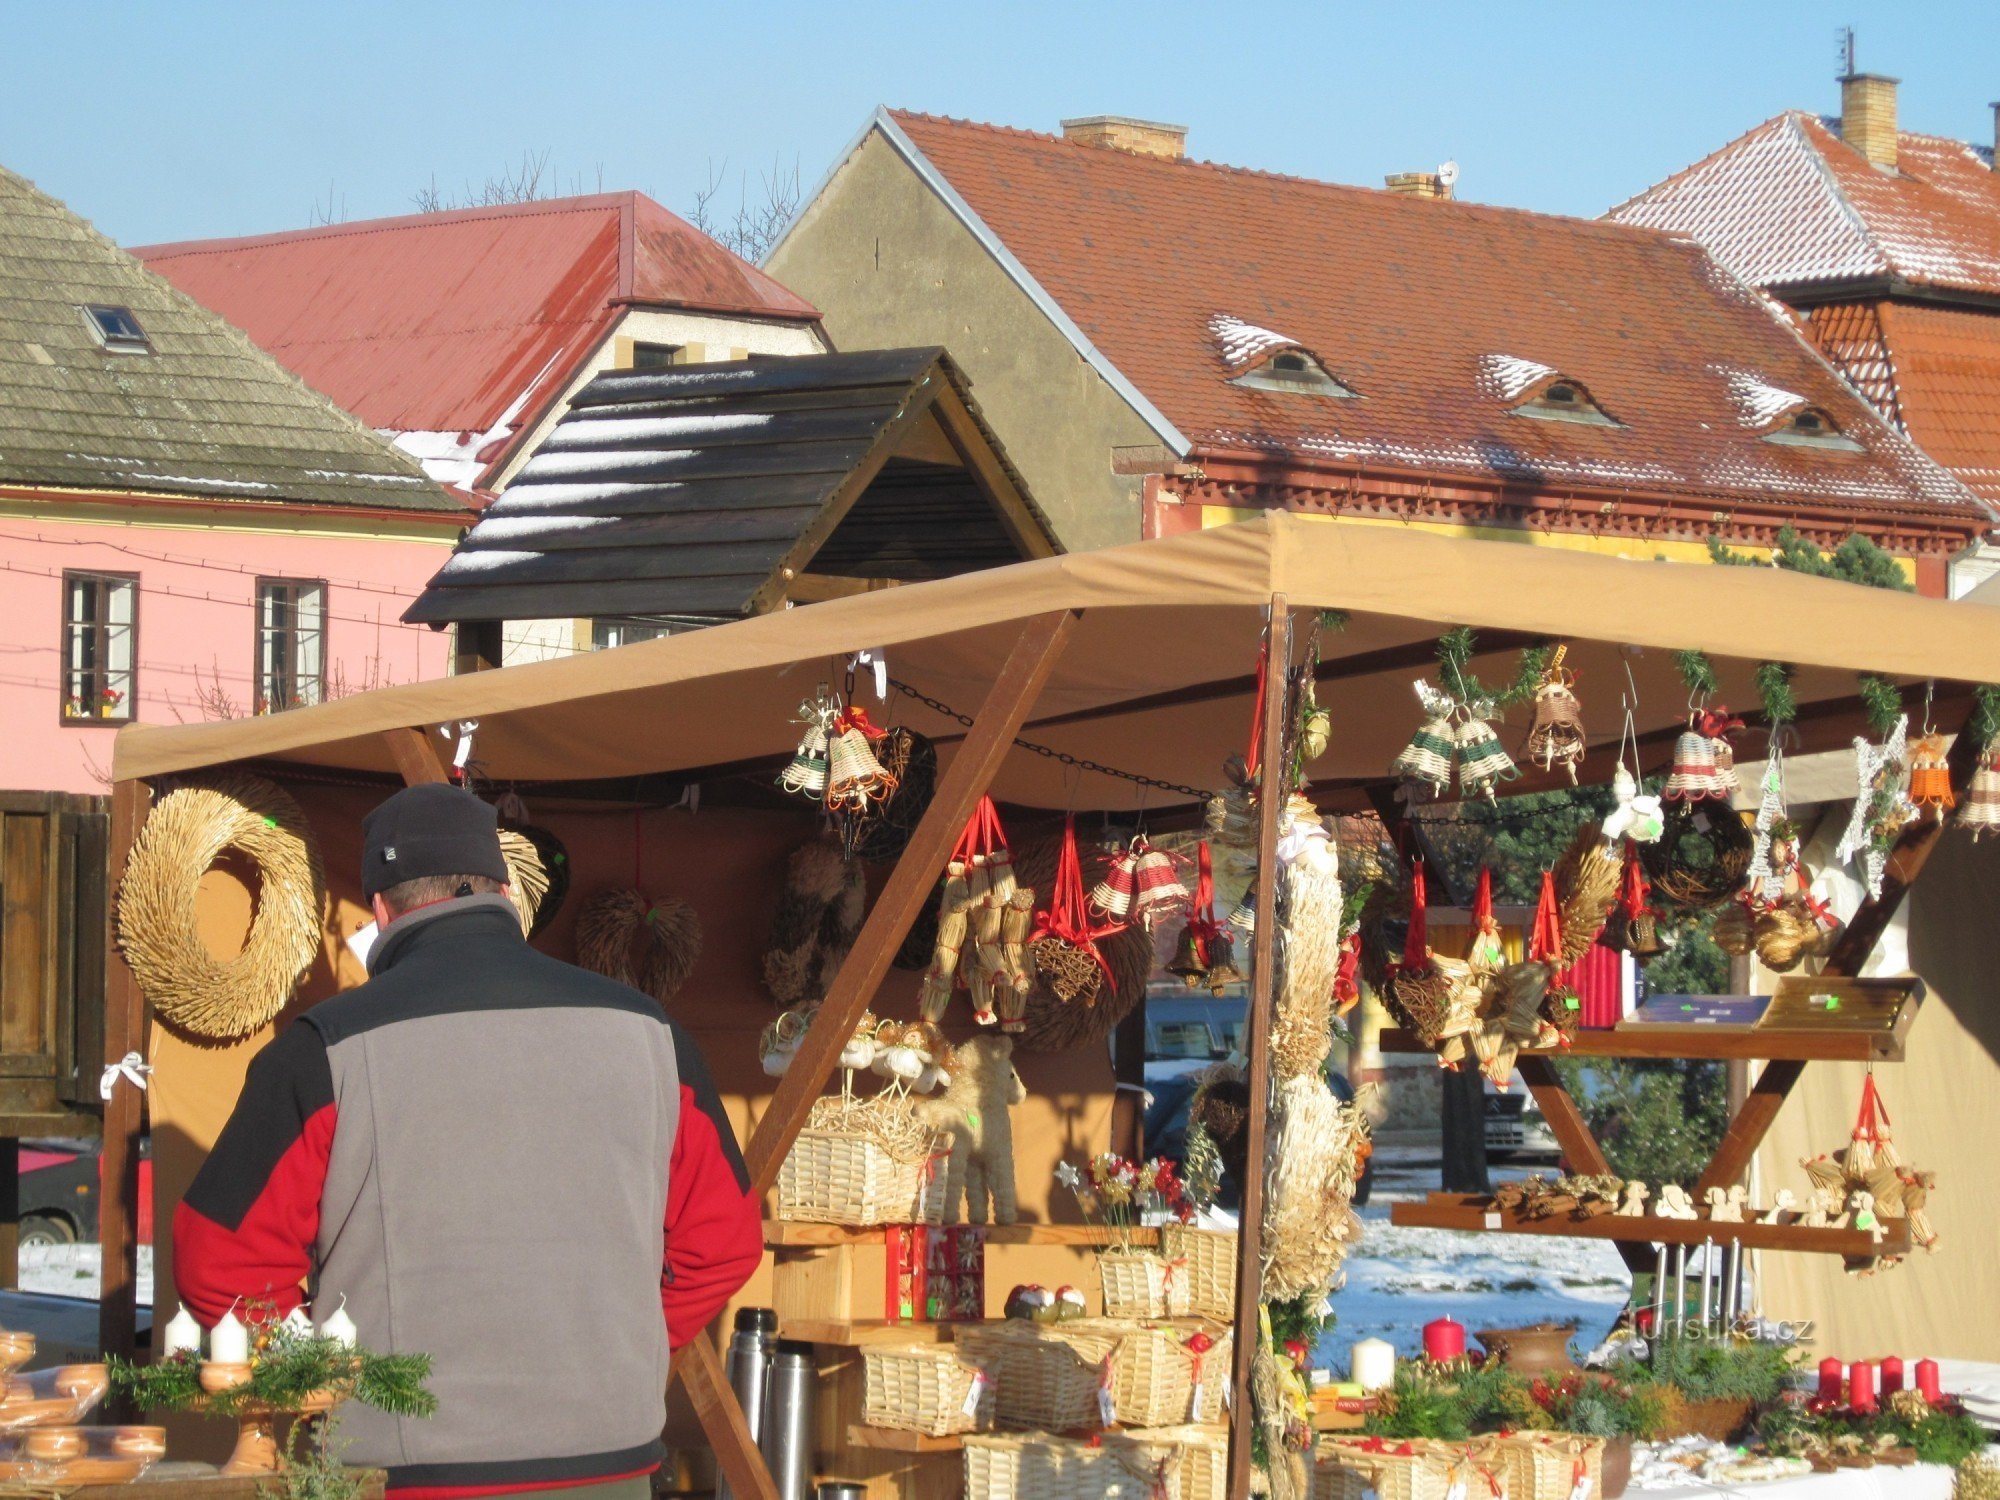 Kostelec nad Černými lesy - Hội chợ thủ công Advent lần 2